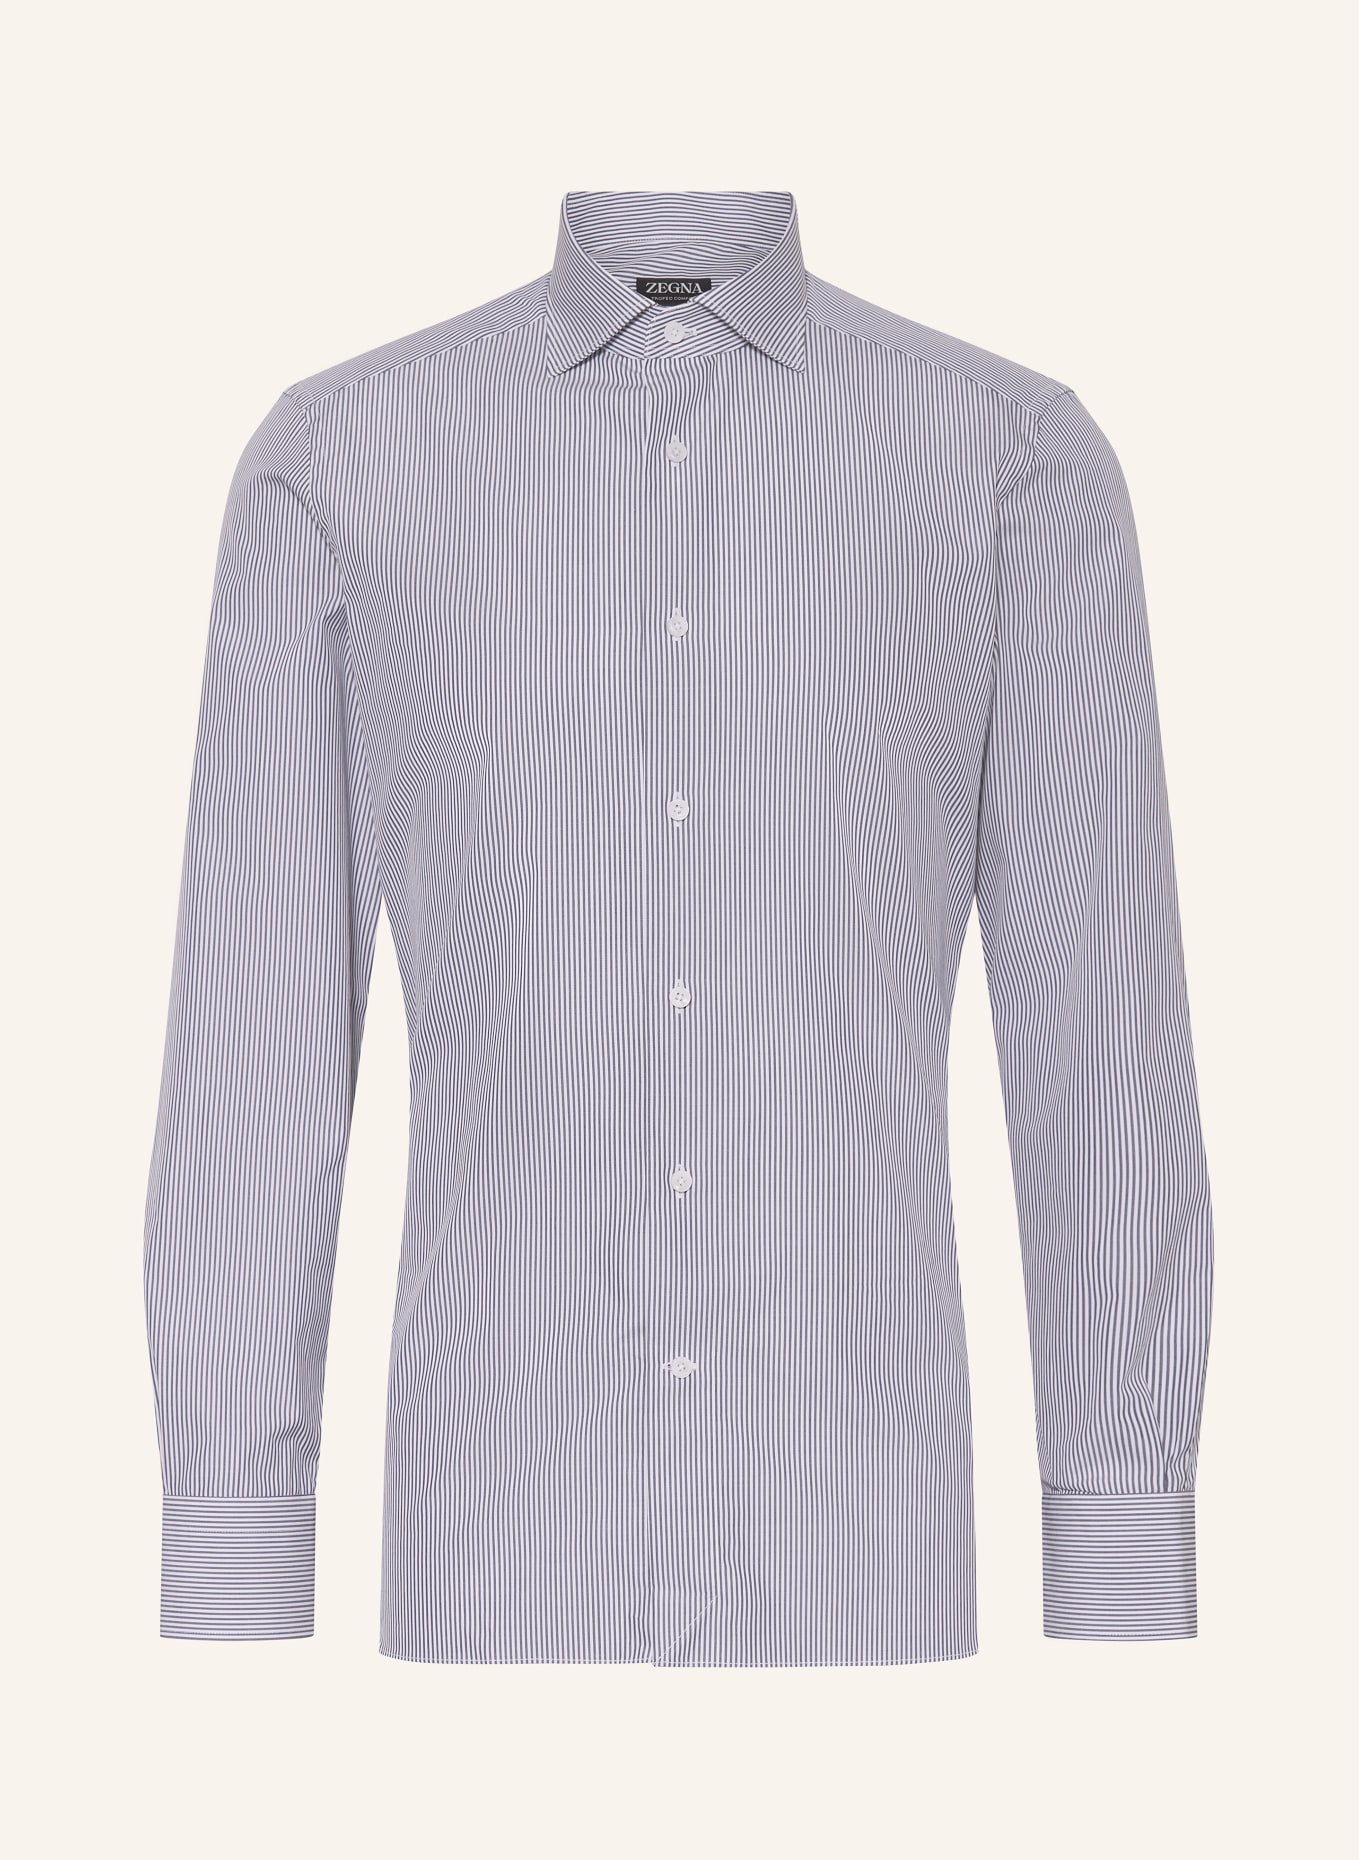 ZEGNA Shirt regular fit, Color: BLUE/ WHITE (Image 1)